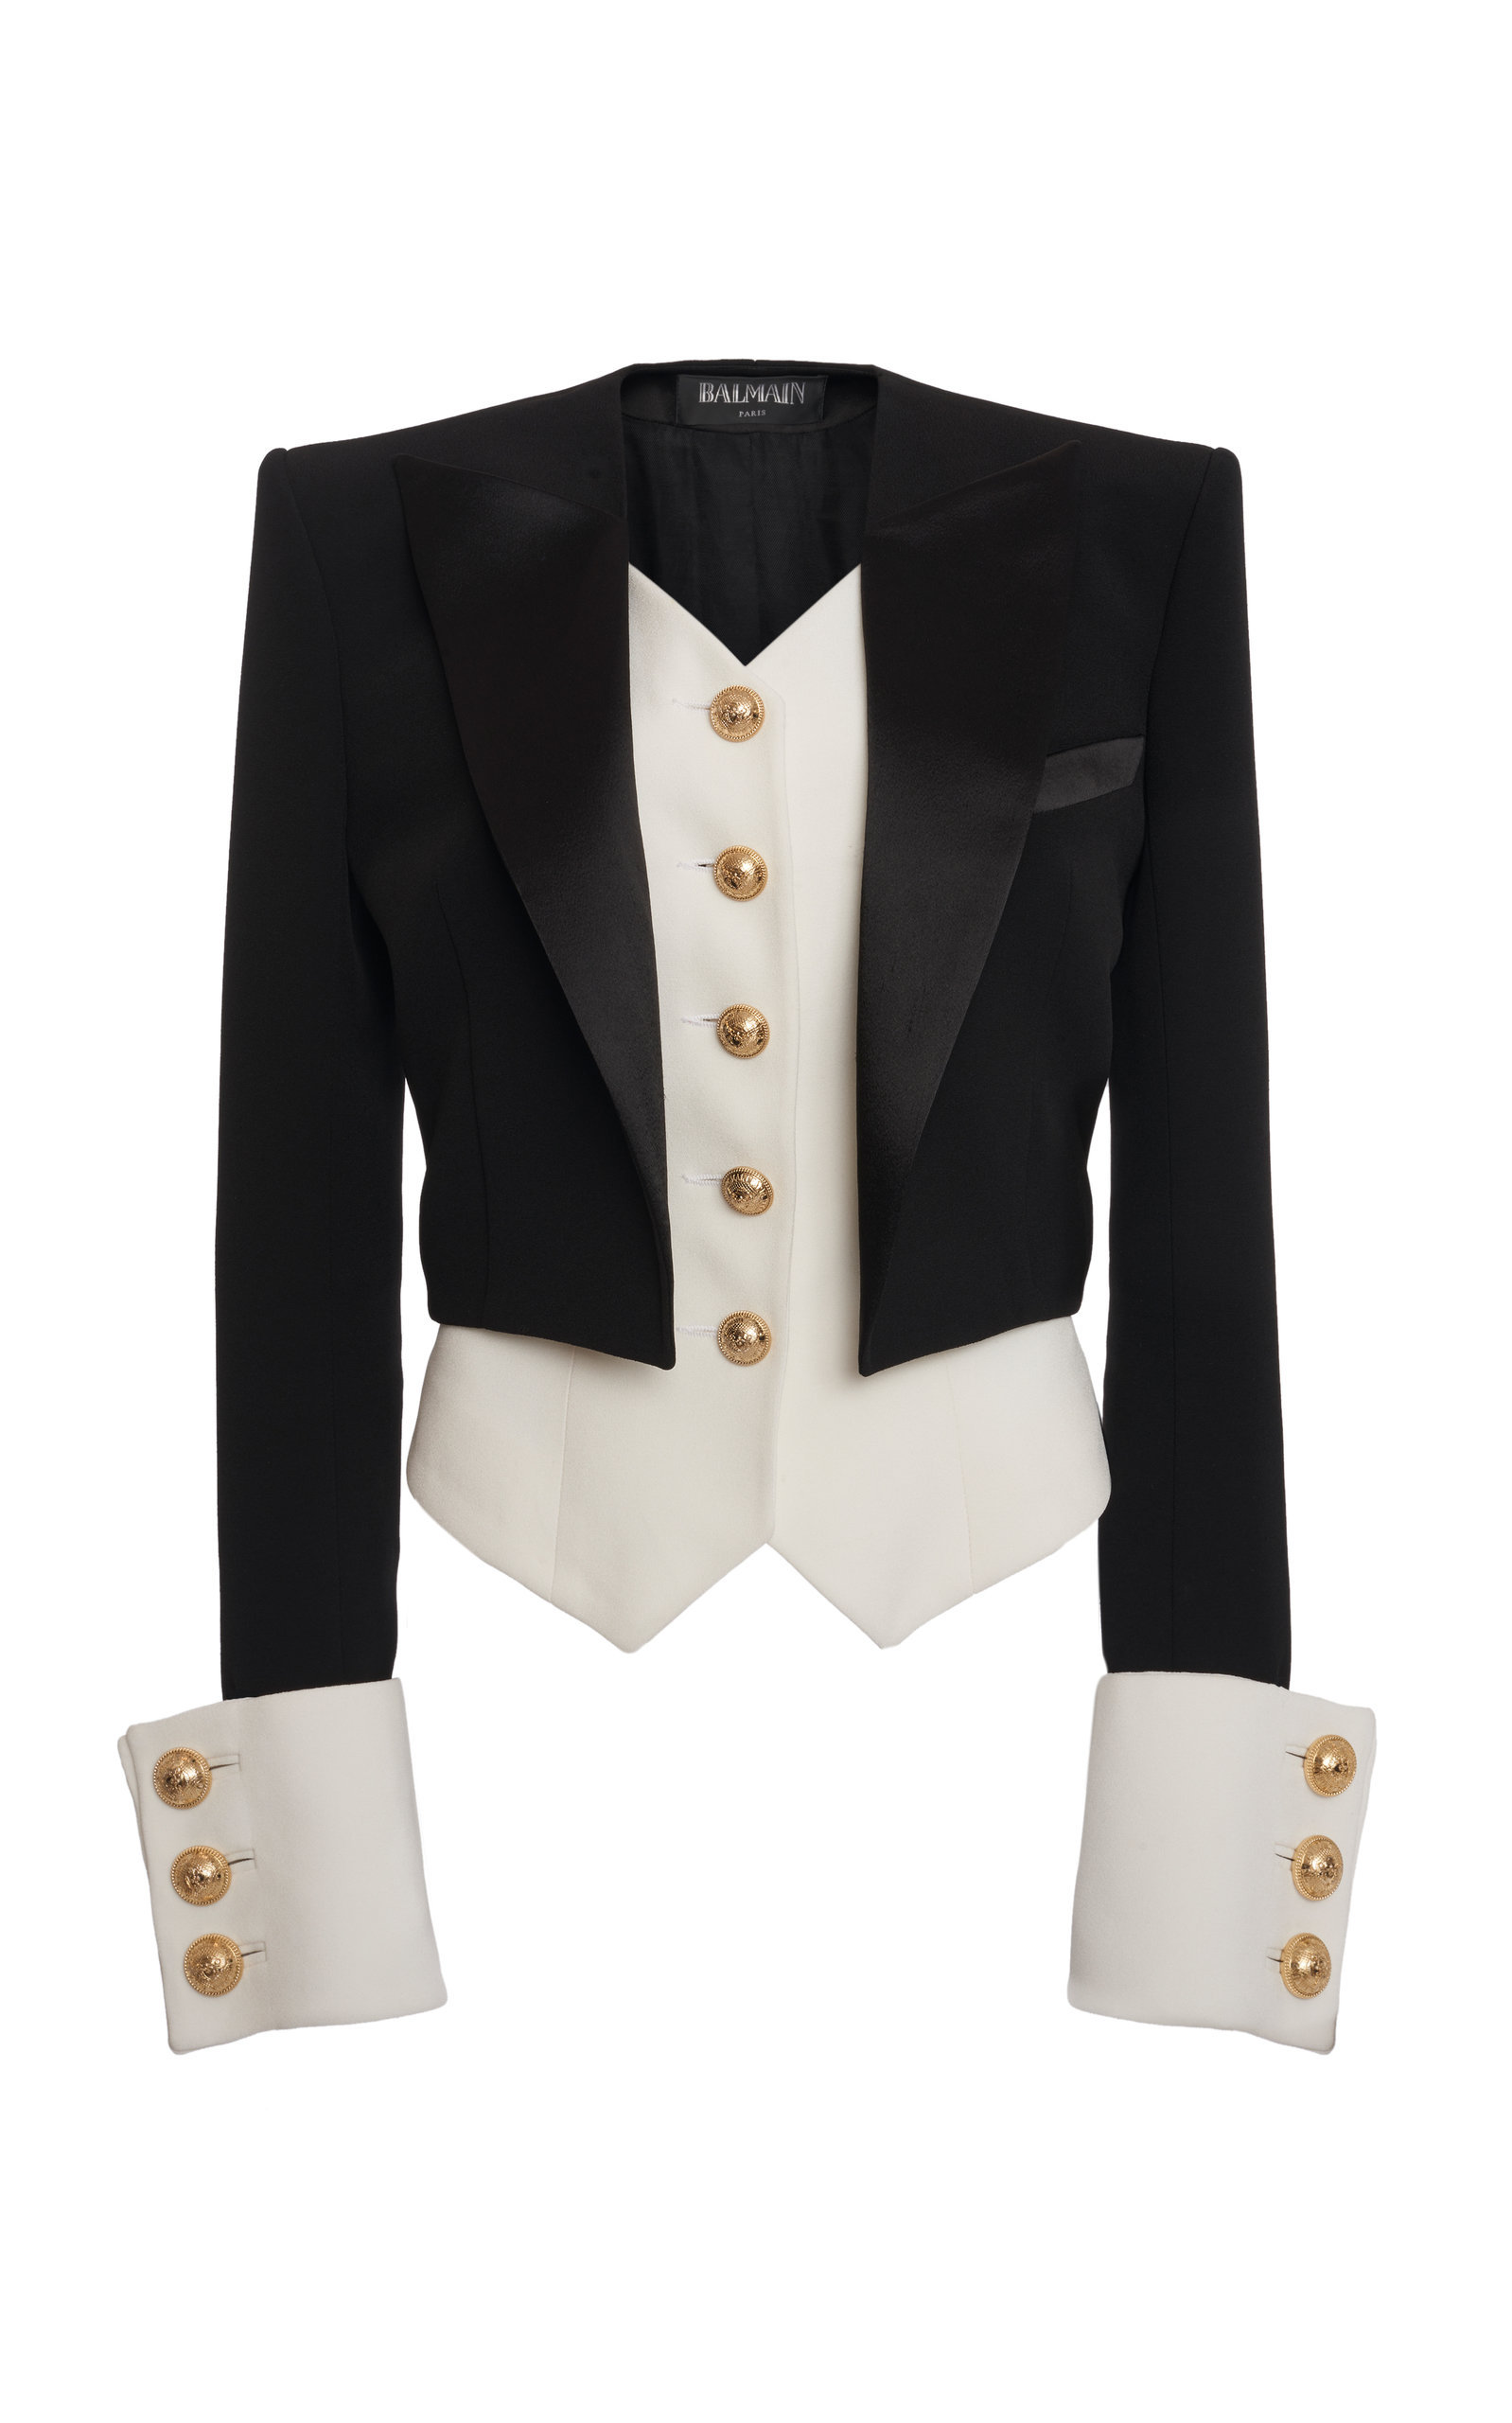 Balmain Satin-trim Tuxedo Crepe Jacket In Black/white | ModeSens